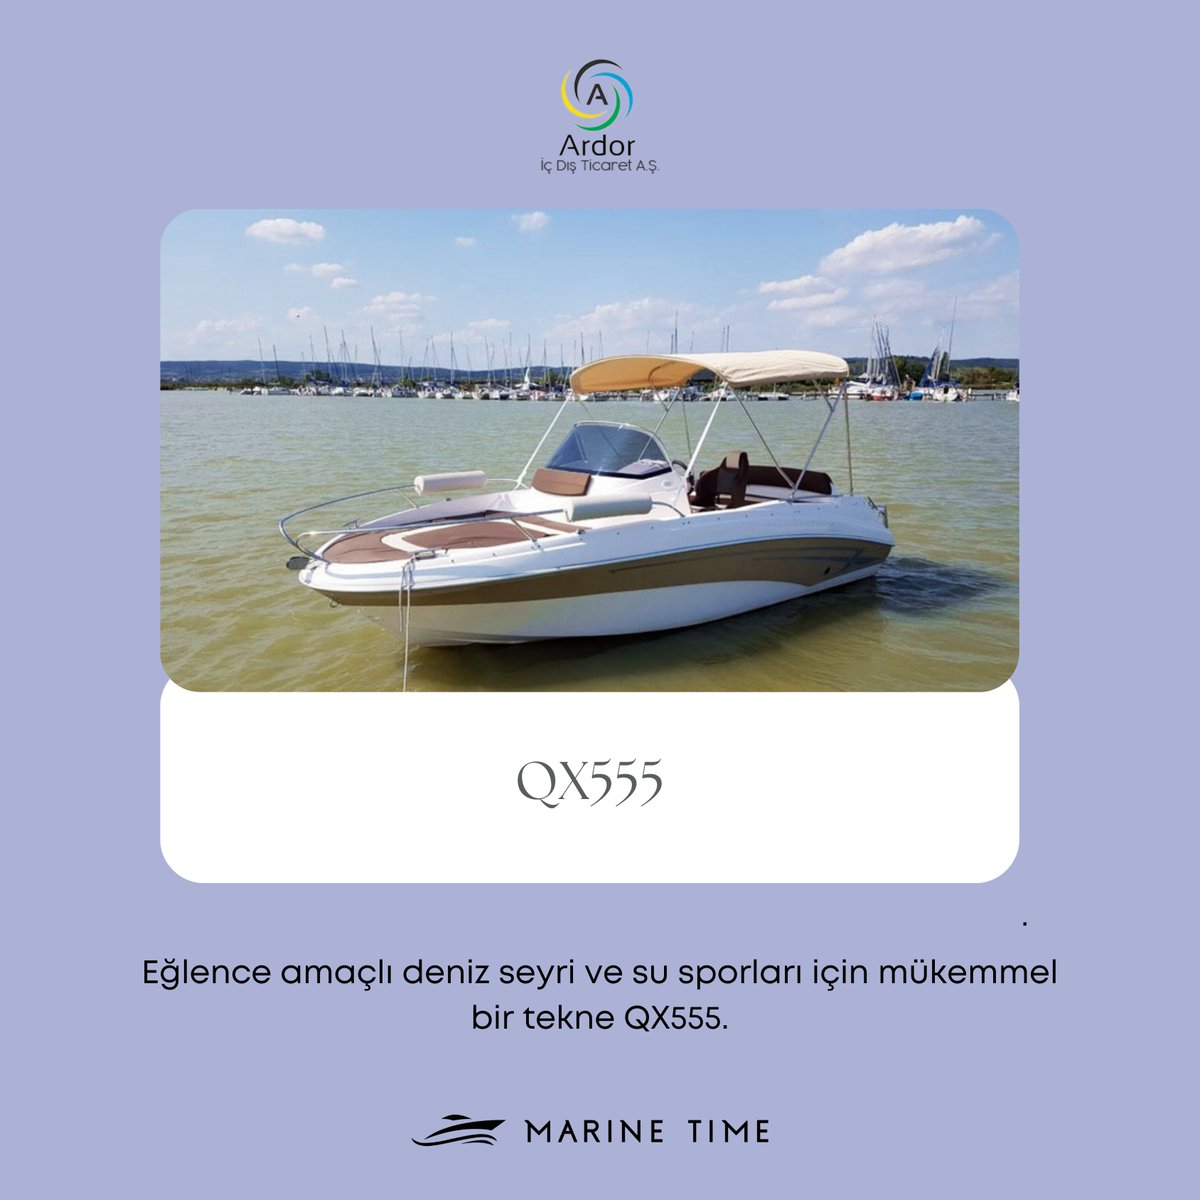 Eğlence amaçlı deniz seyri ve su sporları için mükemmel bir tekne QX555 😍🛥️🌊

📍Polonyalı Marine Time Tekneleri Türkiye Distribütörü Ardor İç Dış Tic. A.Ş.
📩 info@marinetime.com.tr
📱 +90 545 540 38 03
_______
#marinetimetr #tekne #yatsigortası #ardoras #yat #yournextboat